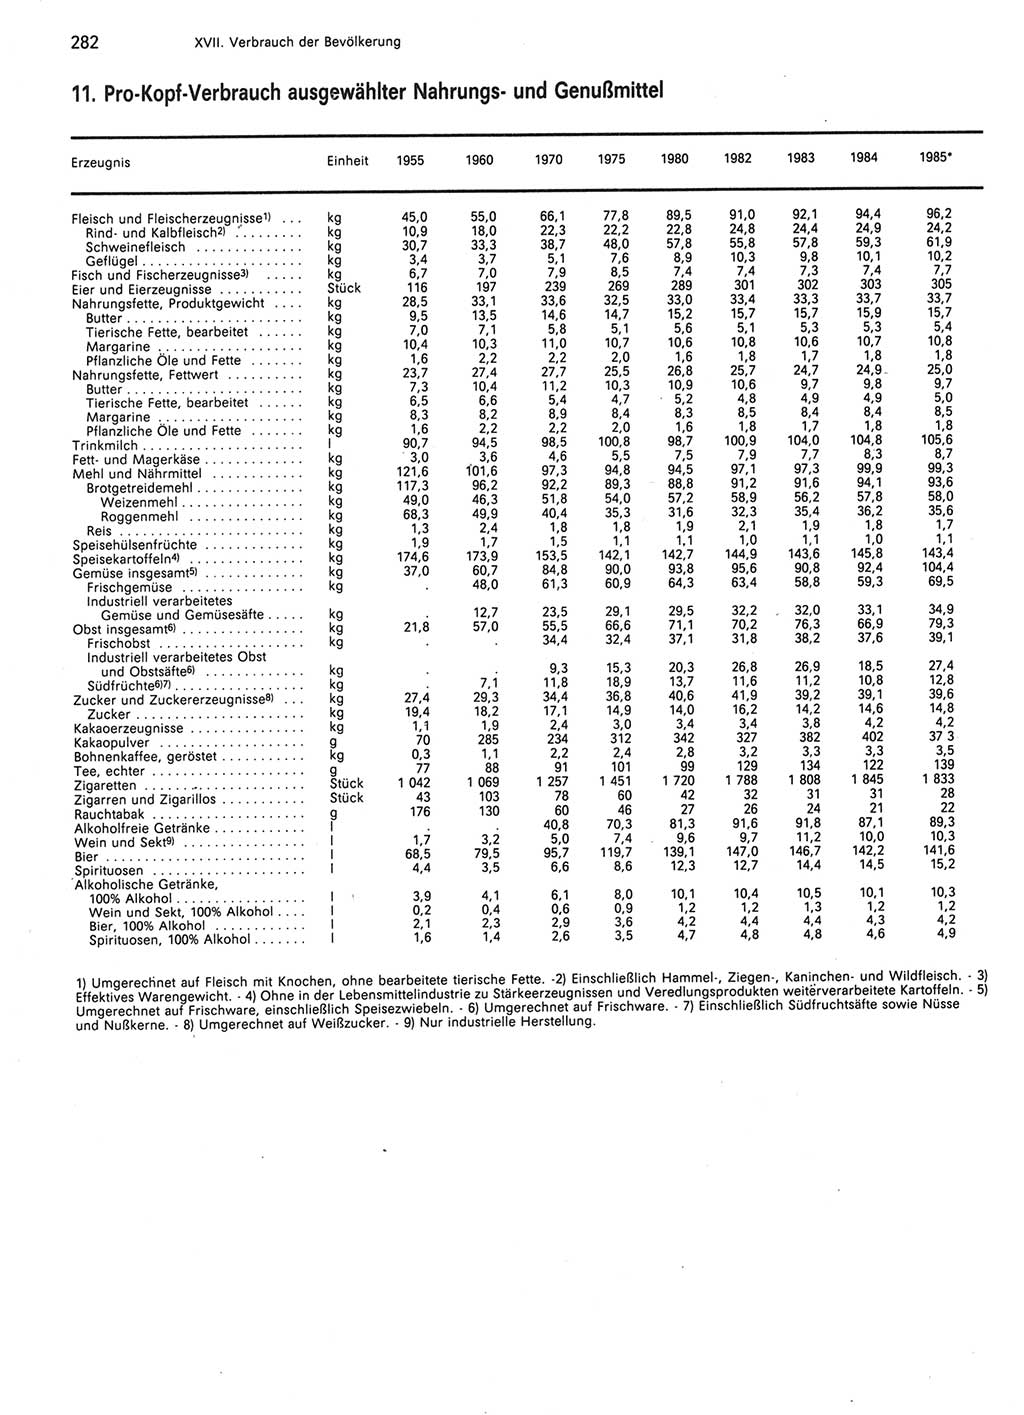 Statistisches Jahrbuch der Deutschen Demokratischen Republik (DDR) 1986, Seite 282 (Stat. Jb. DDR 1986, S. 282)